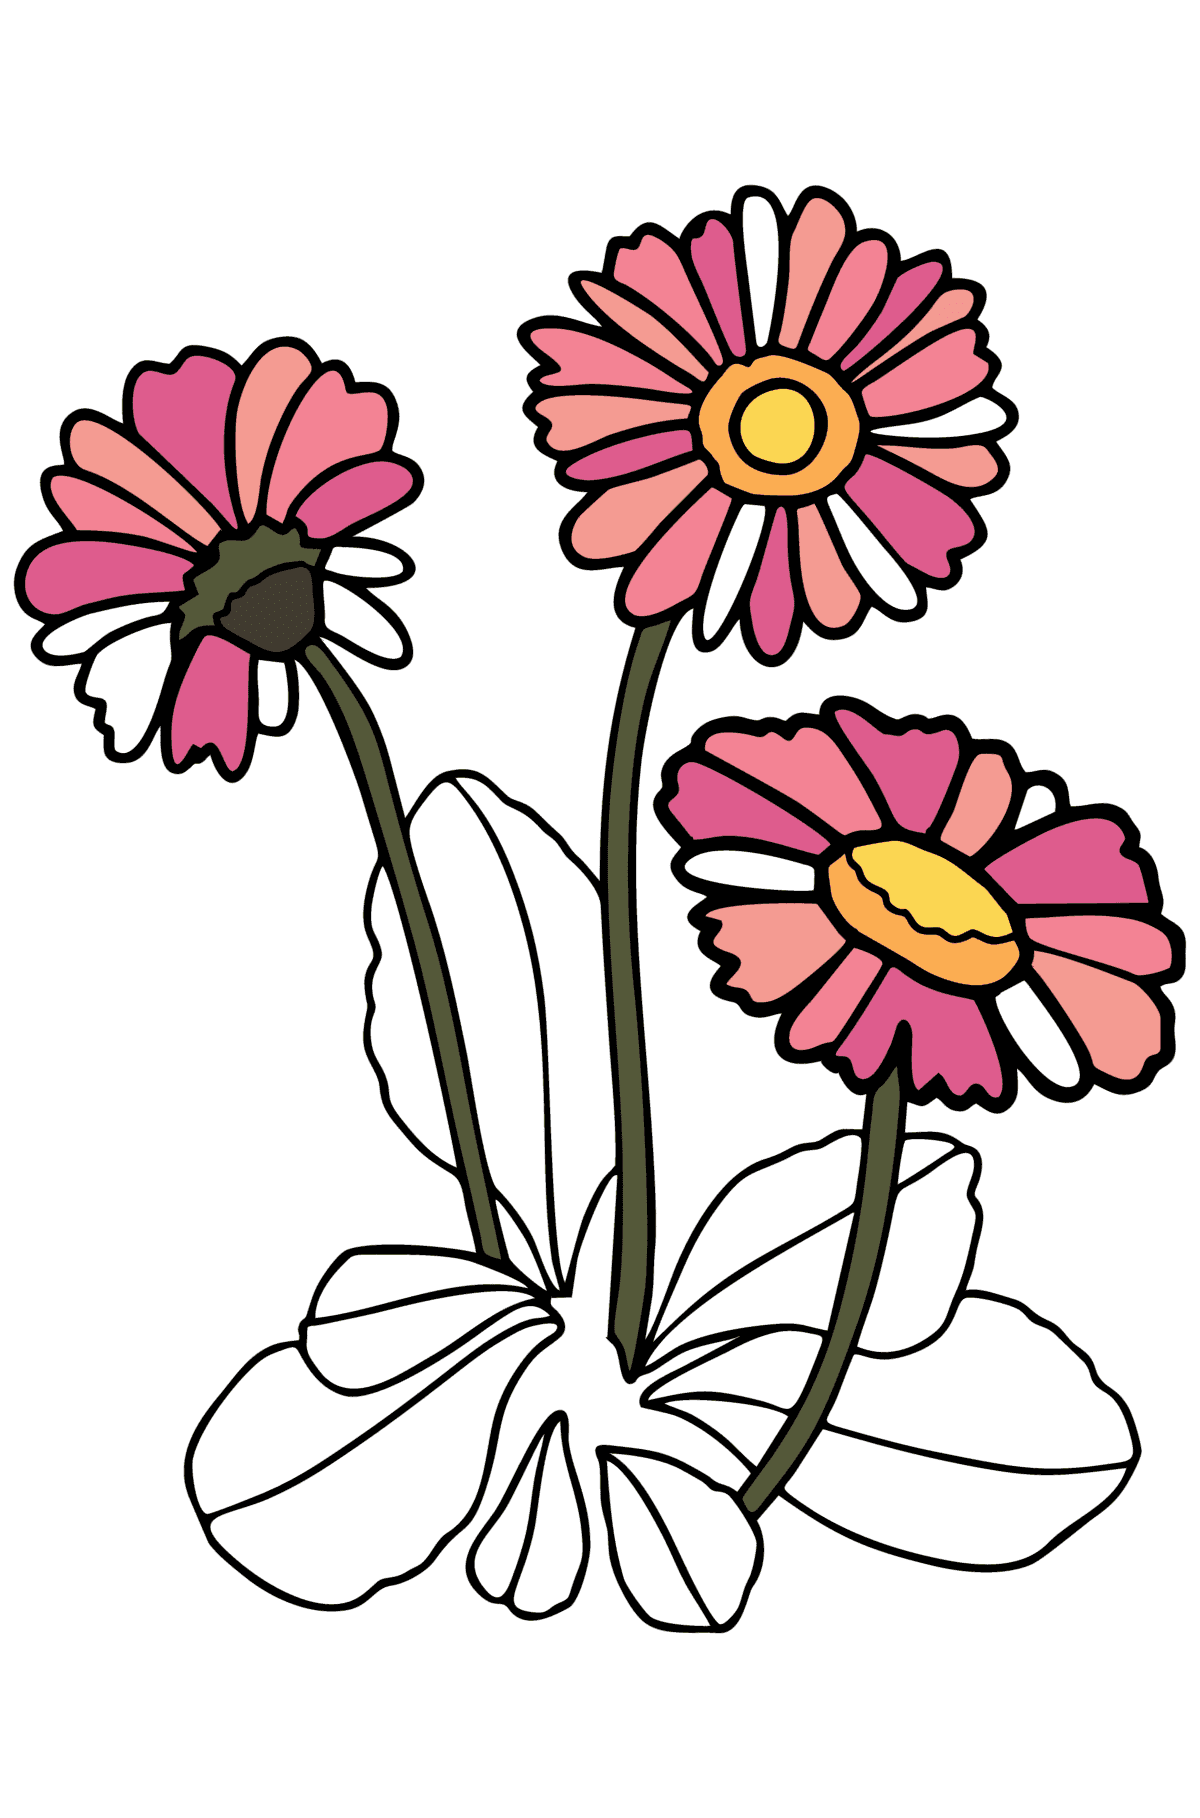 Tegning til farvning Daisy - Tegninger til farvelægning for børn